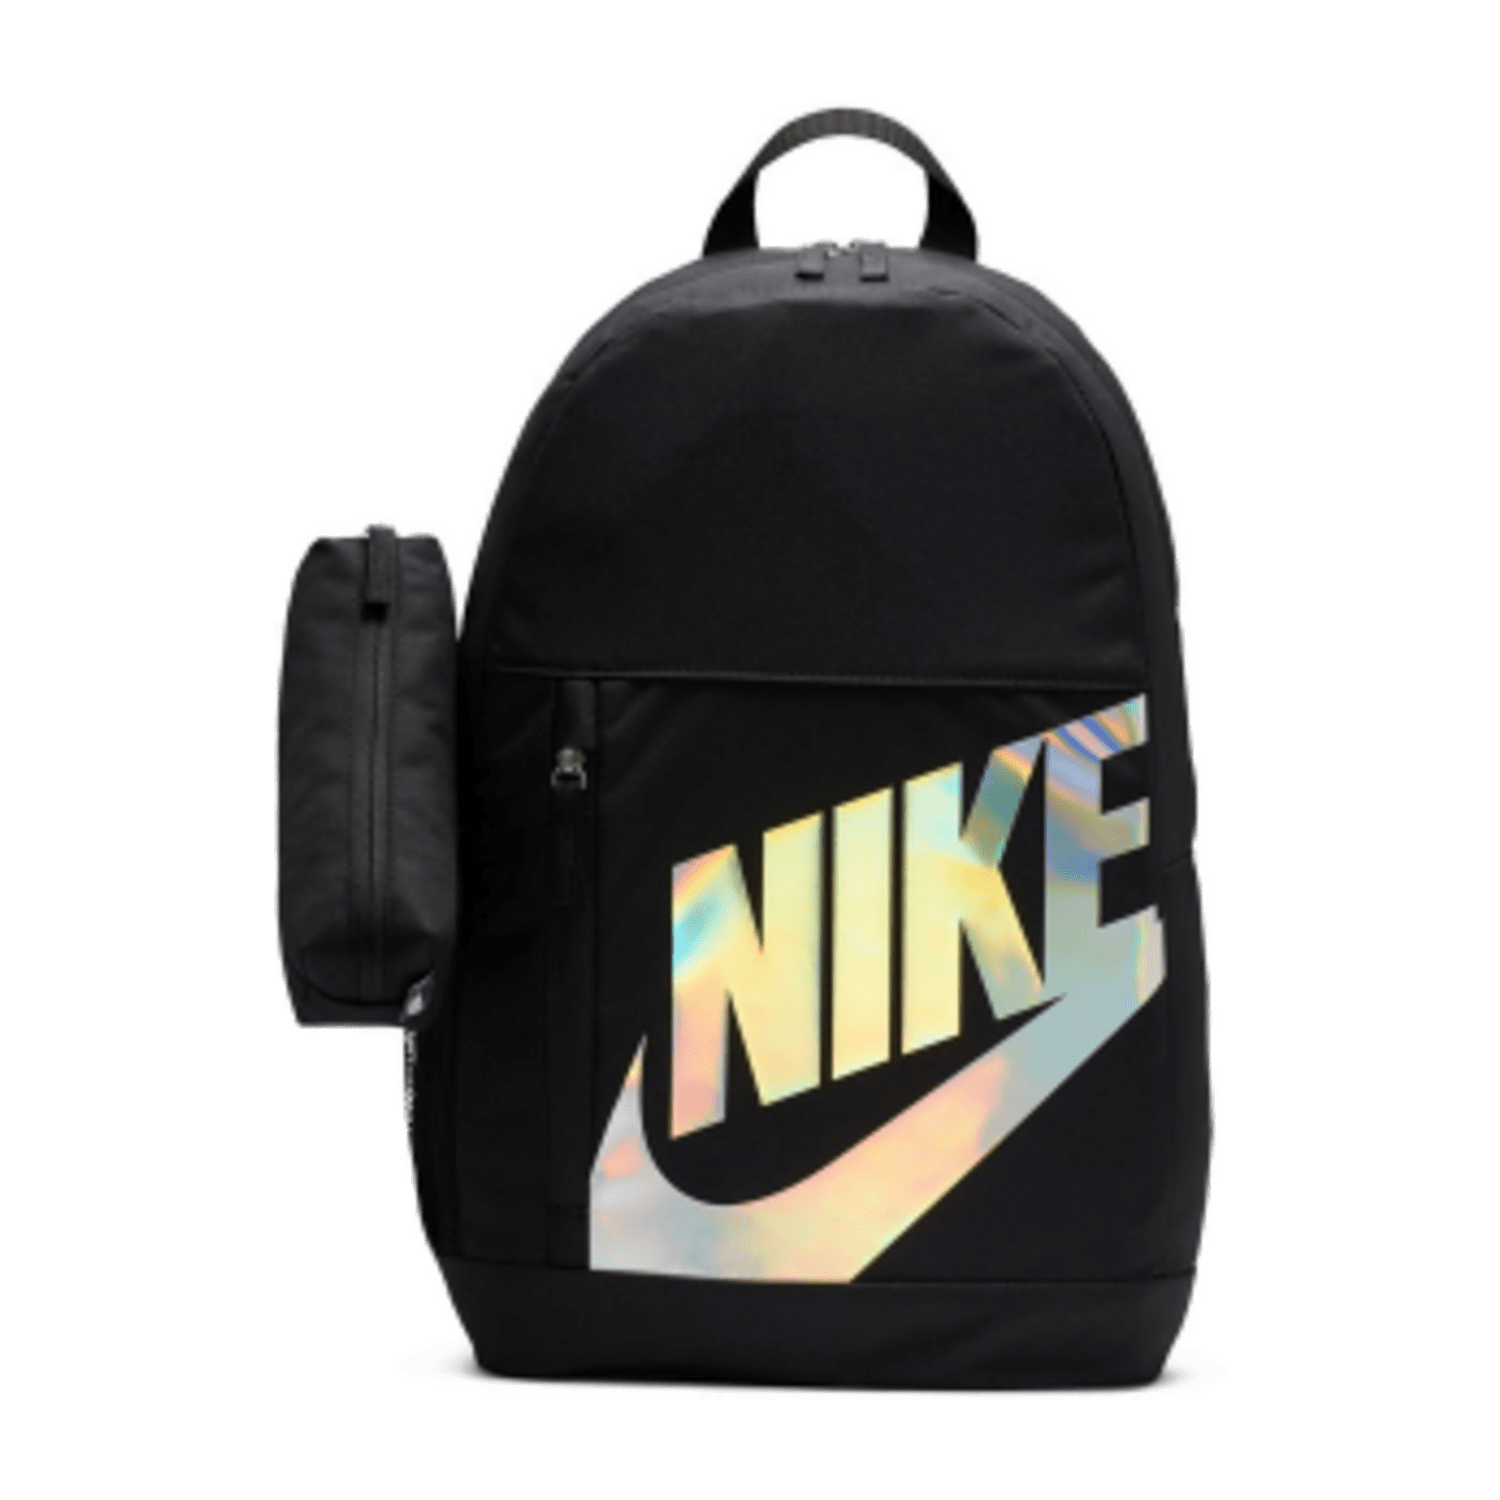 Nike Kids' Backpack,